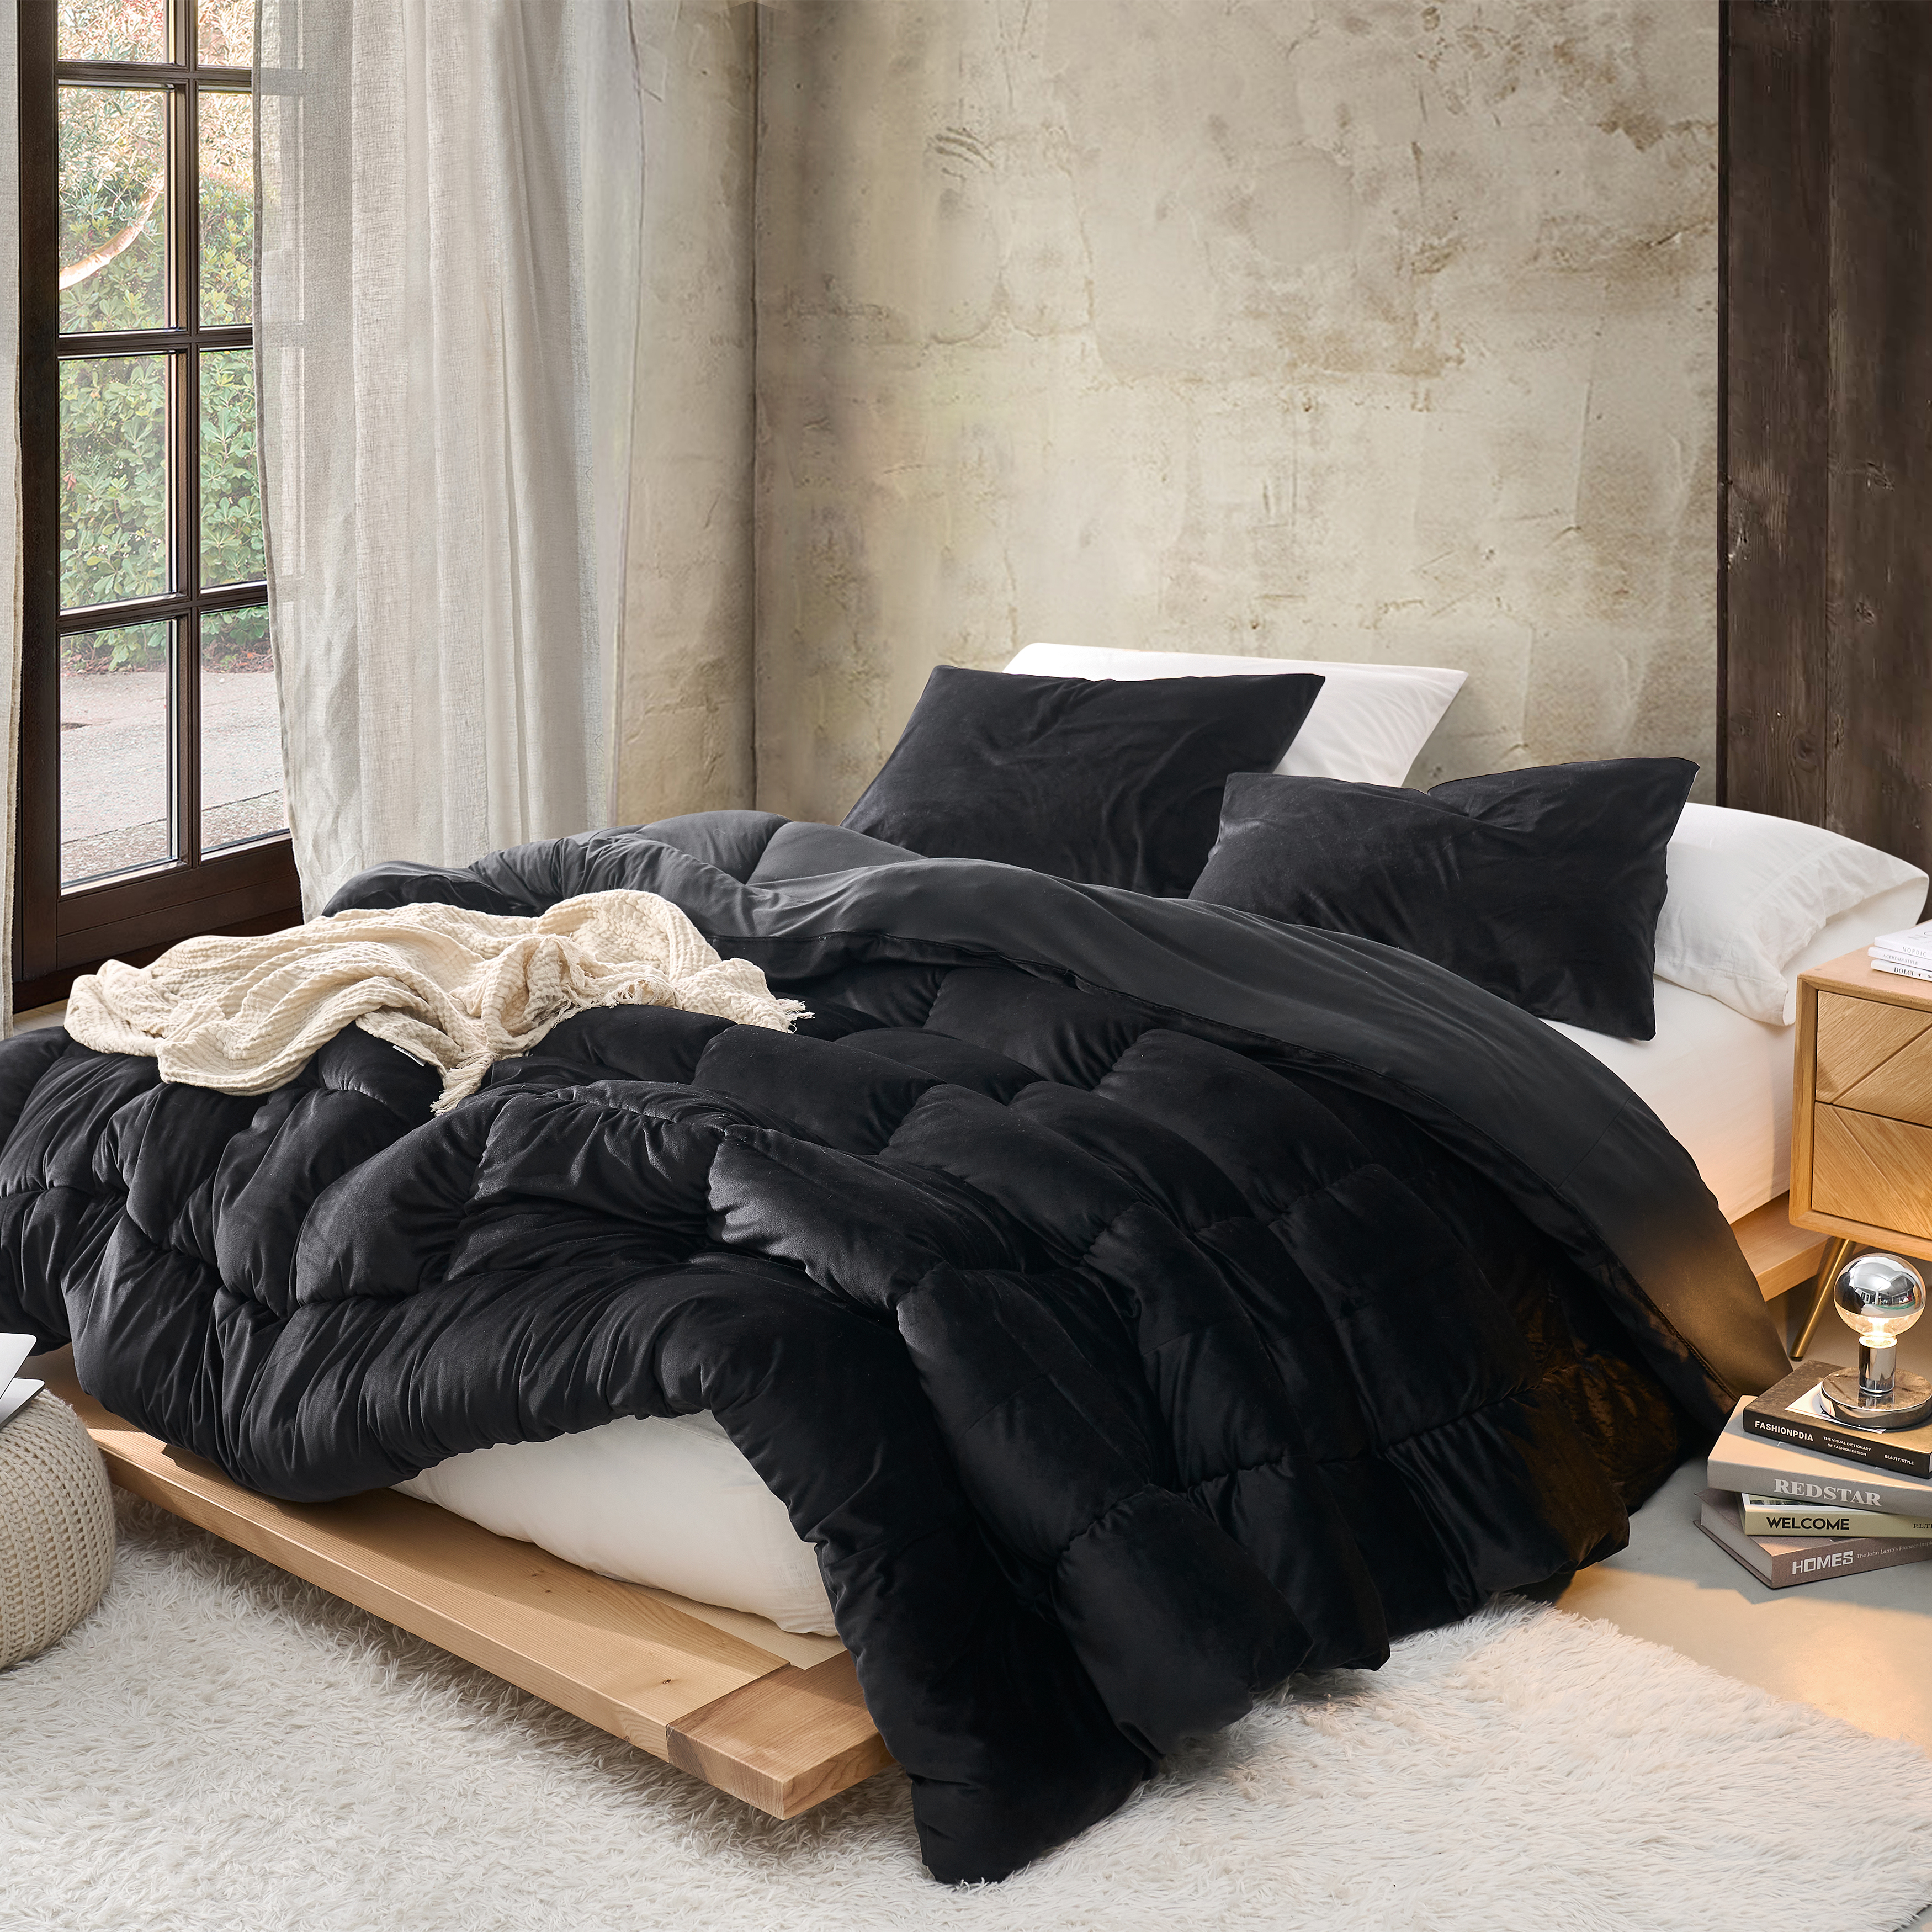 Fabric Fetish - Coma Inducer Oversized Comforter - Black